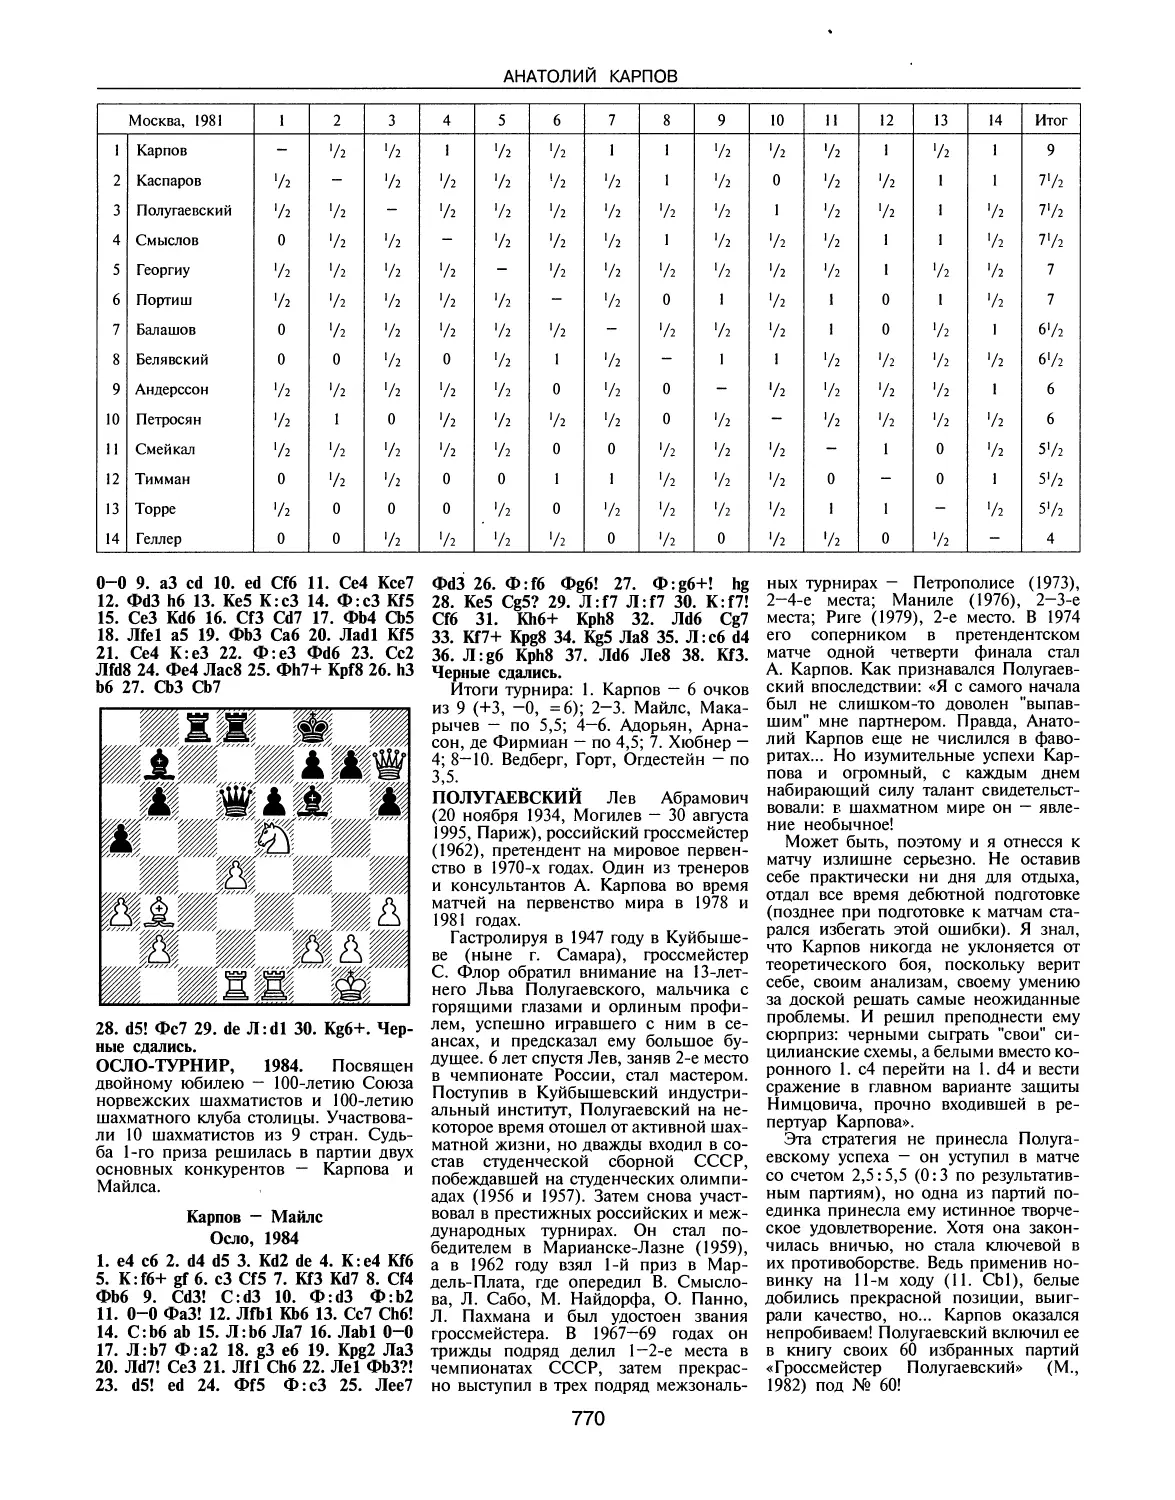 Осло-турнир, 1984
Полугаевский Л.